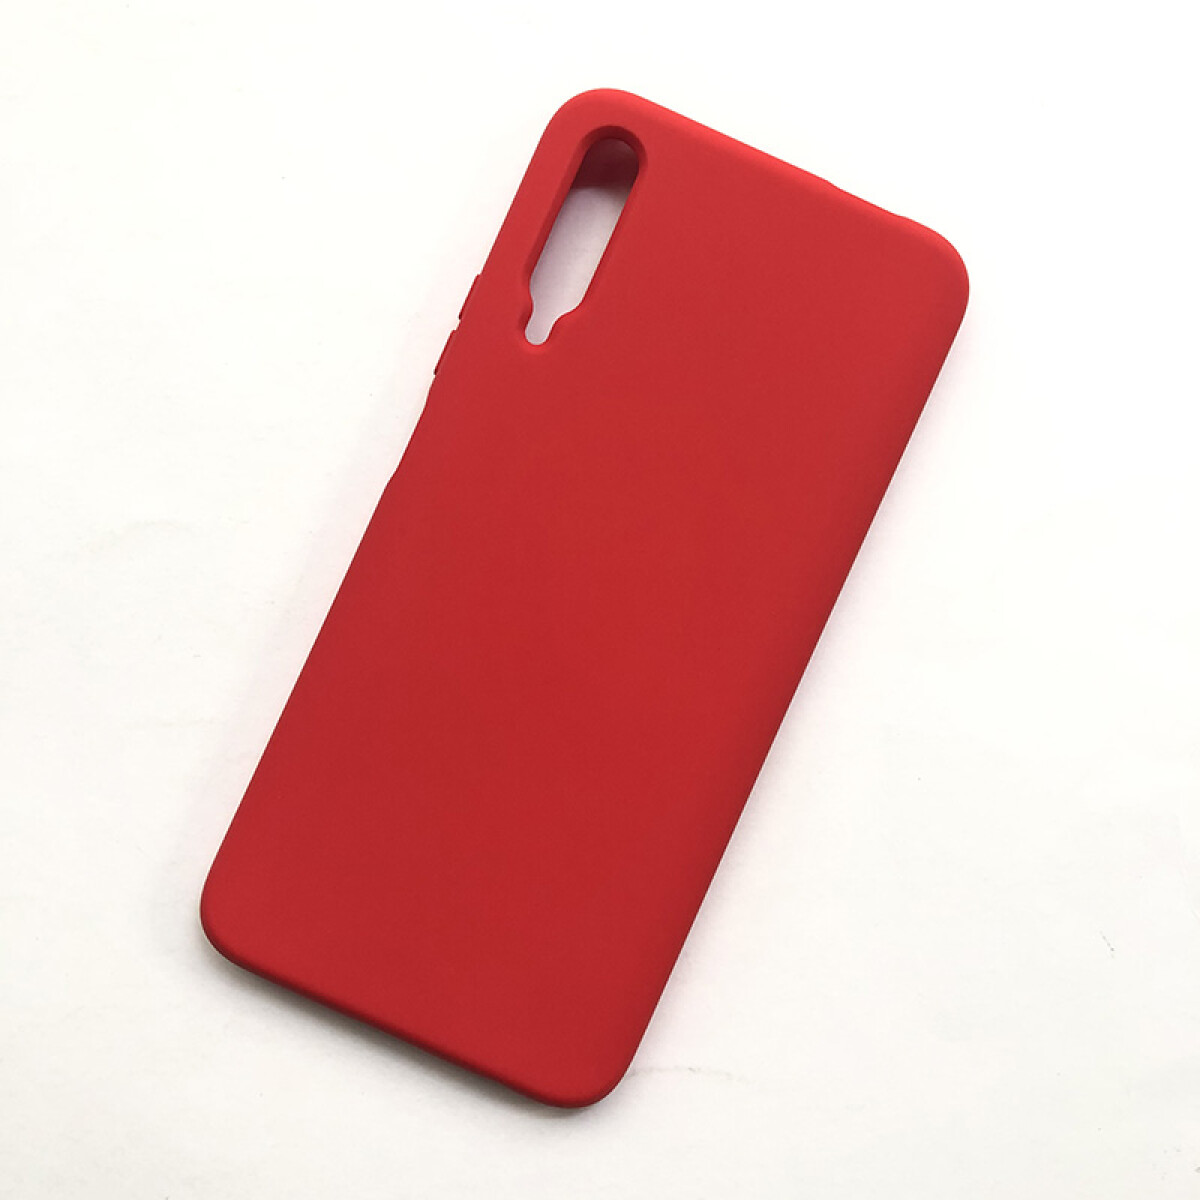 Protector de silicona para Huawei Y9s rojo 